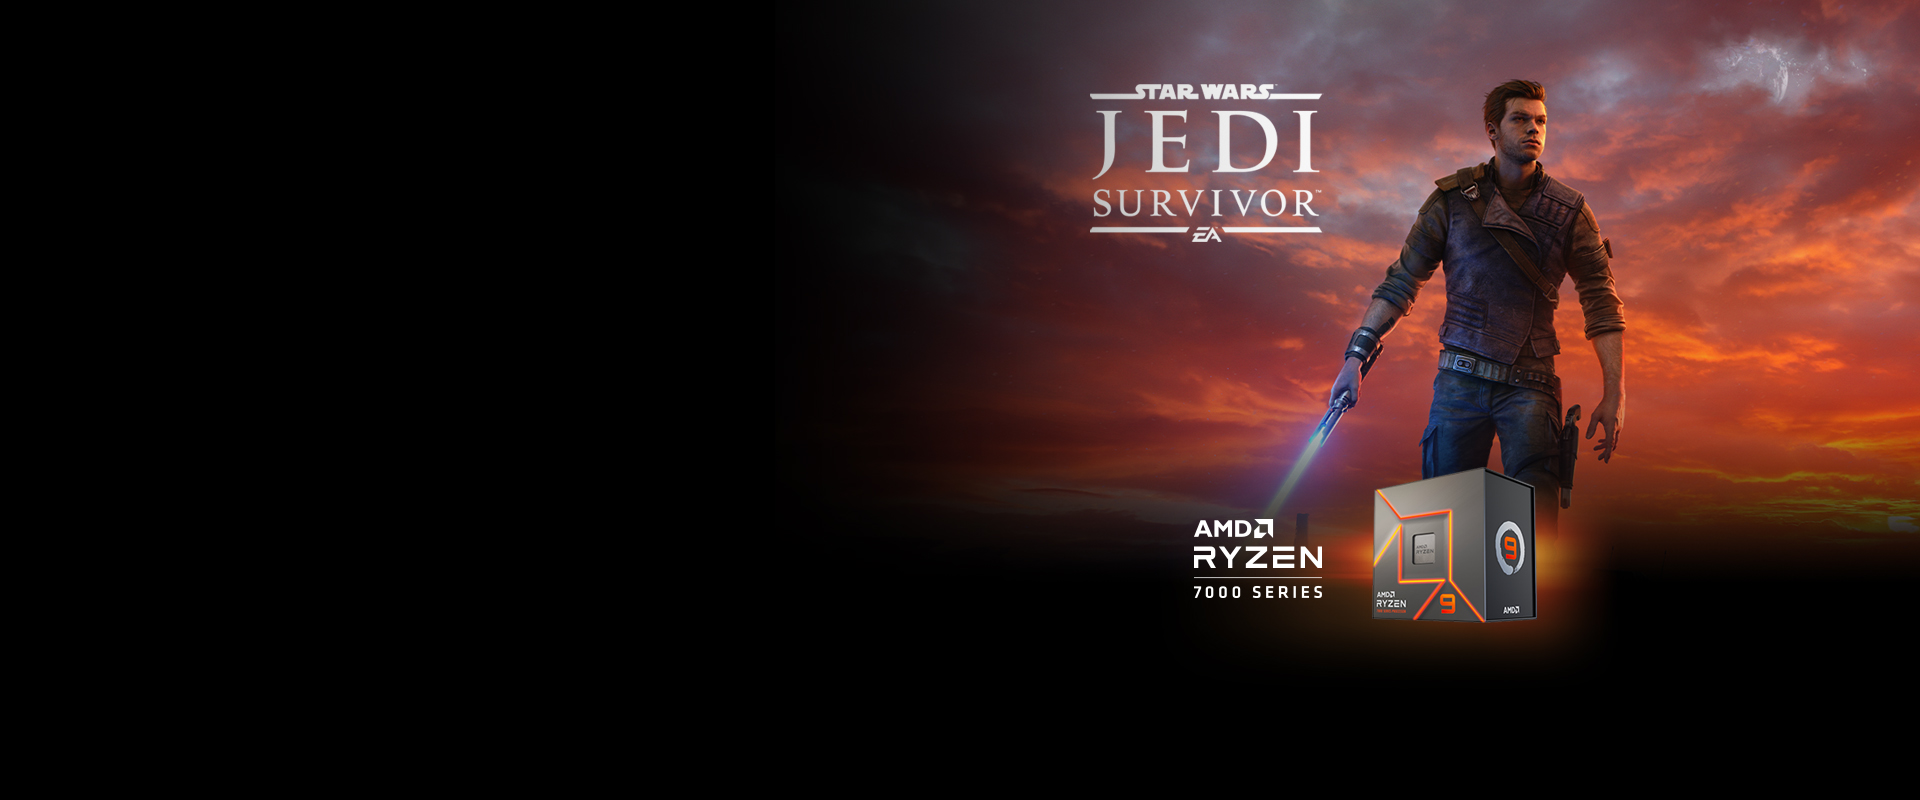 AMD Ryzen Star Wars: Jedi Survivors